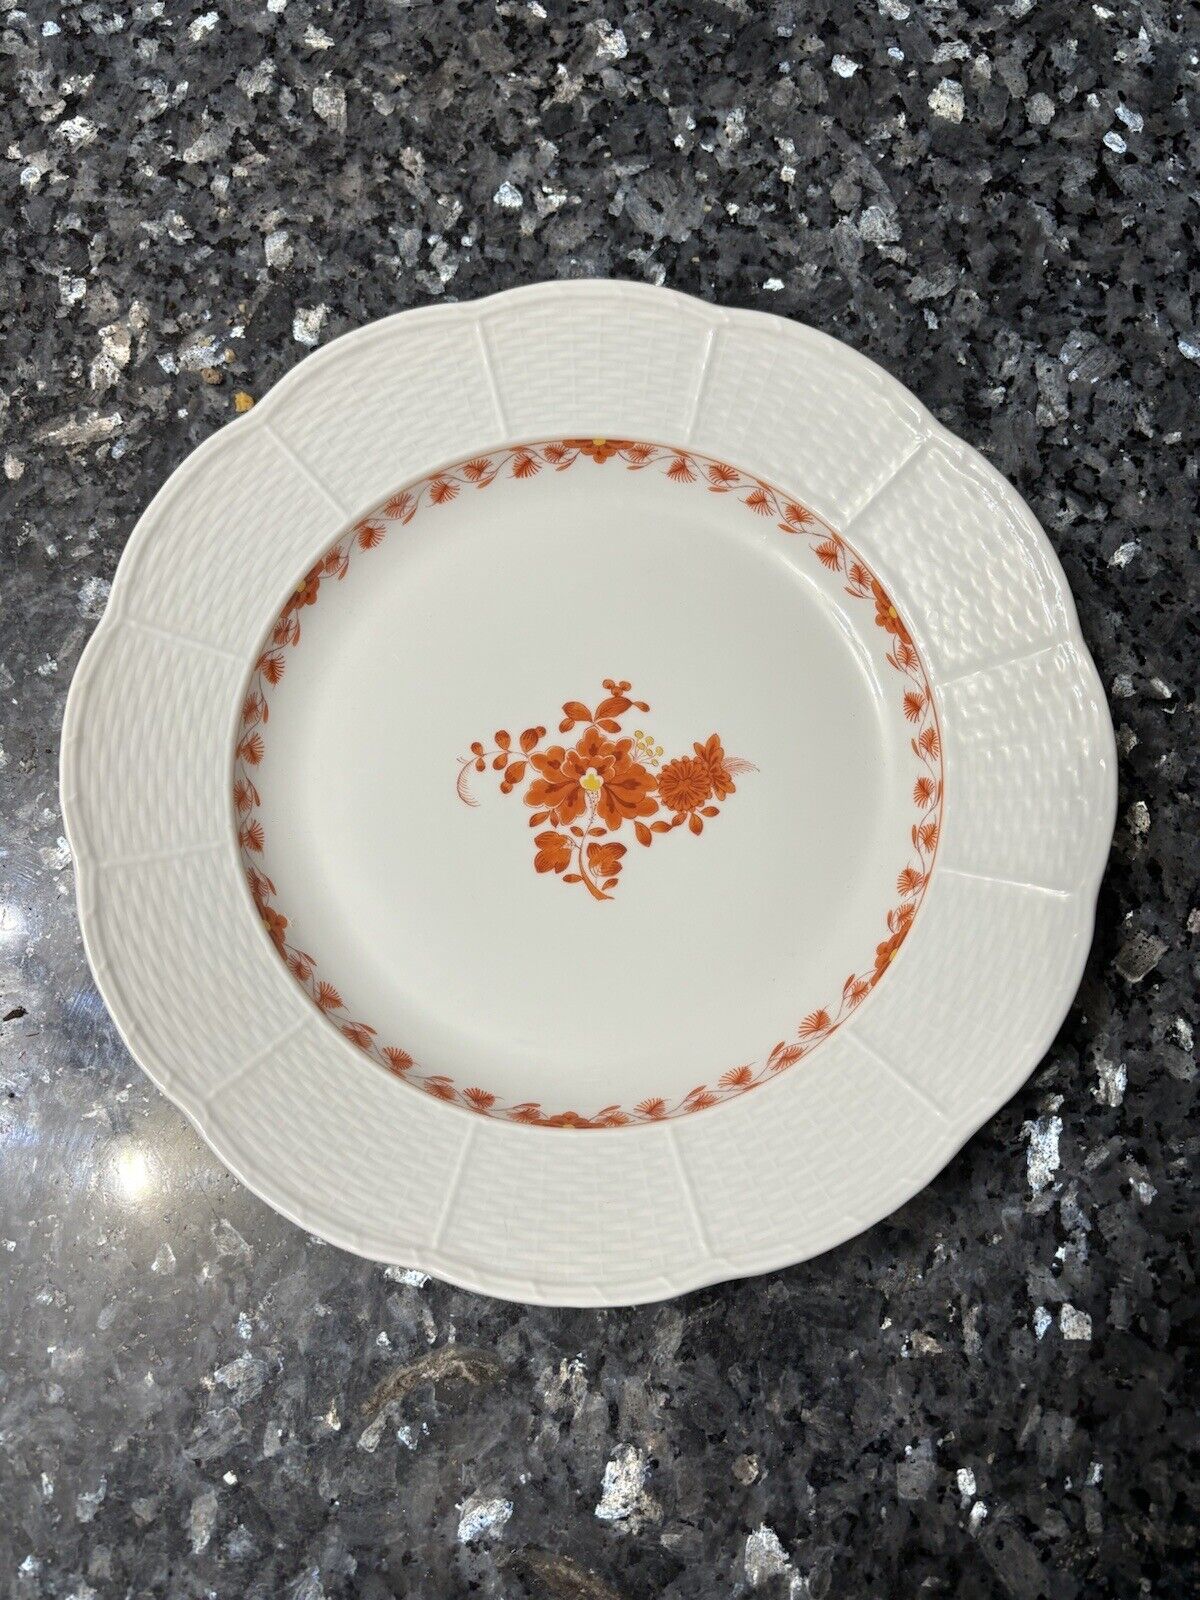 8 Meissen Dinner Plates - Beautiful Orange Flower Pattern Rare Find